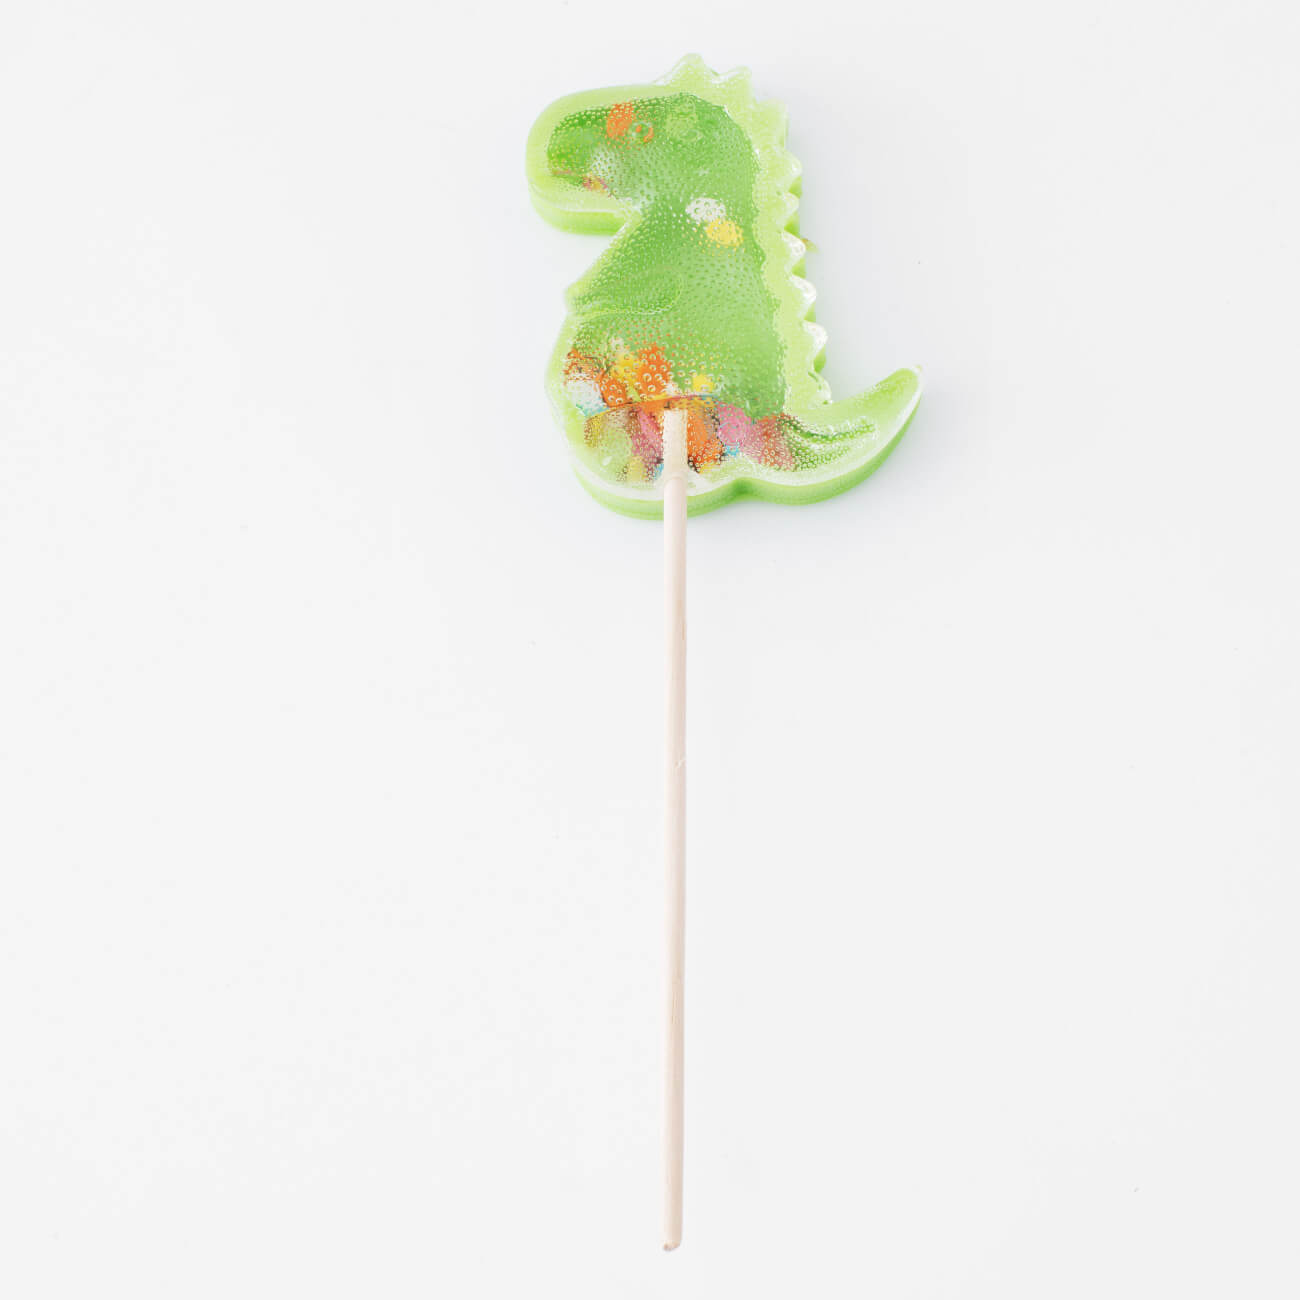 Леденец, 40 гр, погремушка, на палочке, изомальт, зеленый, Динозавр, Dino развивающий браслетик погремушка